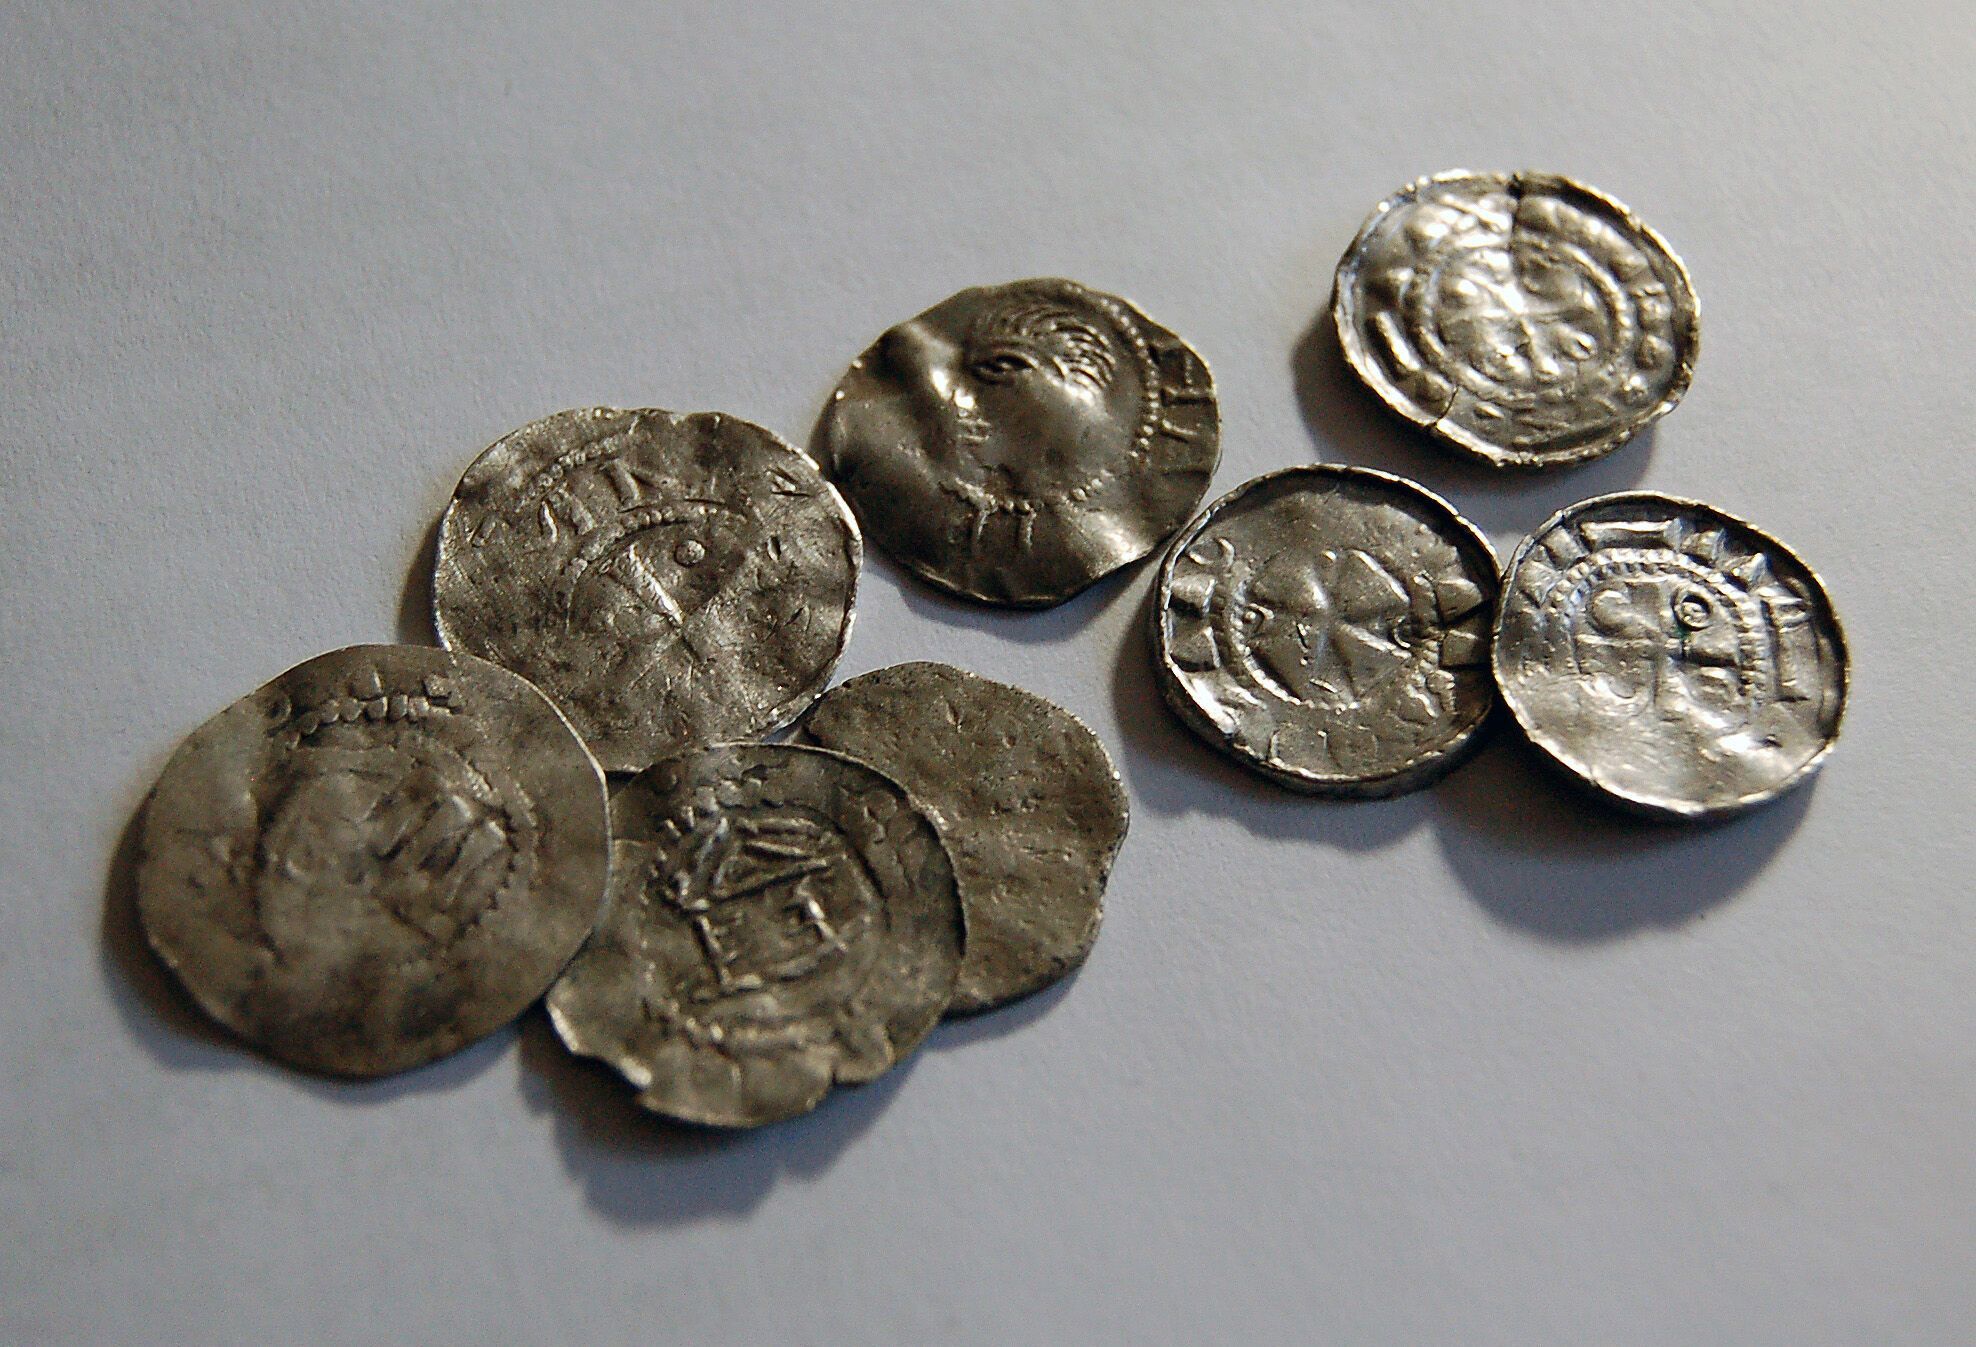 Редкостный клад средневековых монет XI века нашел металлоискатель в Польше: фото